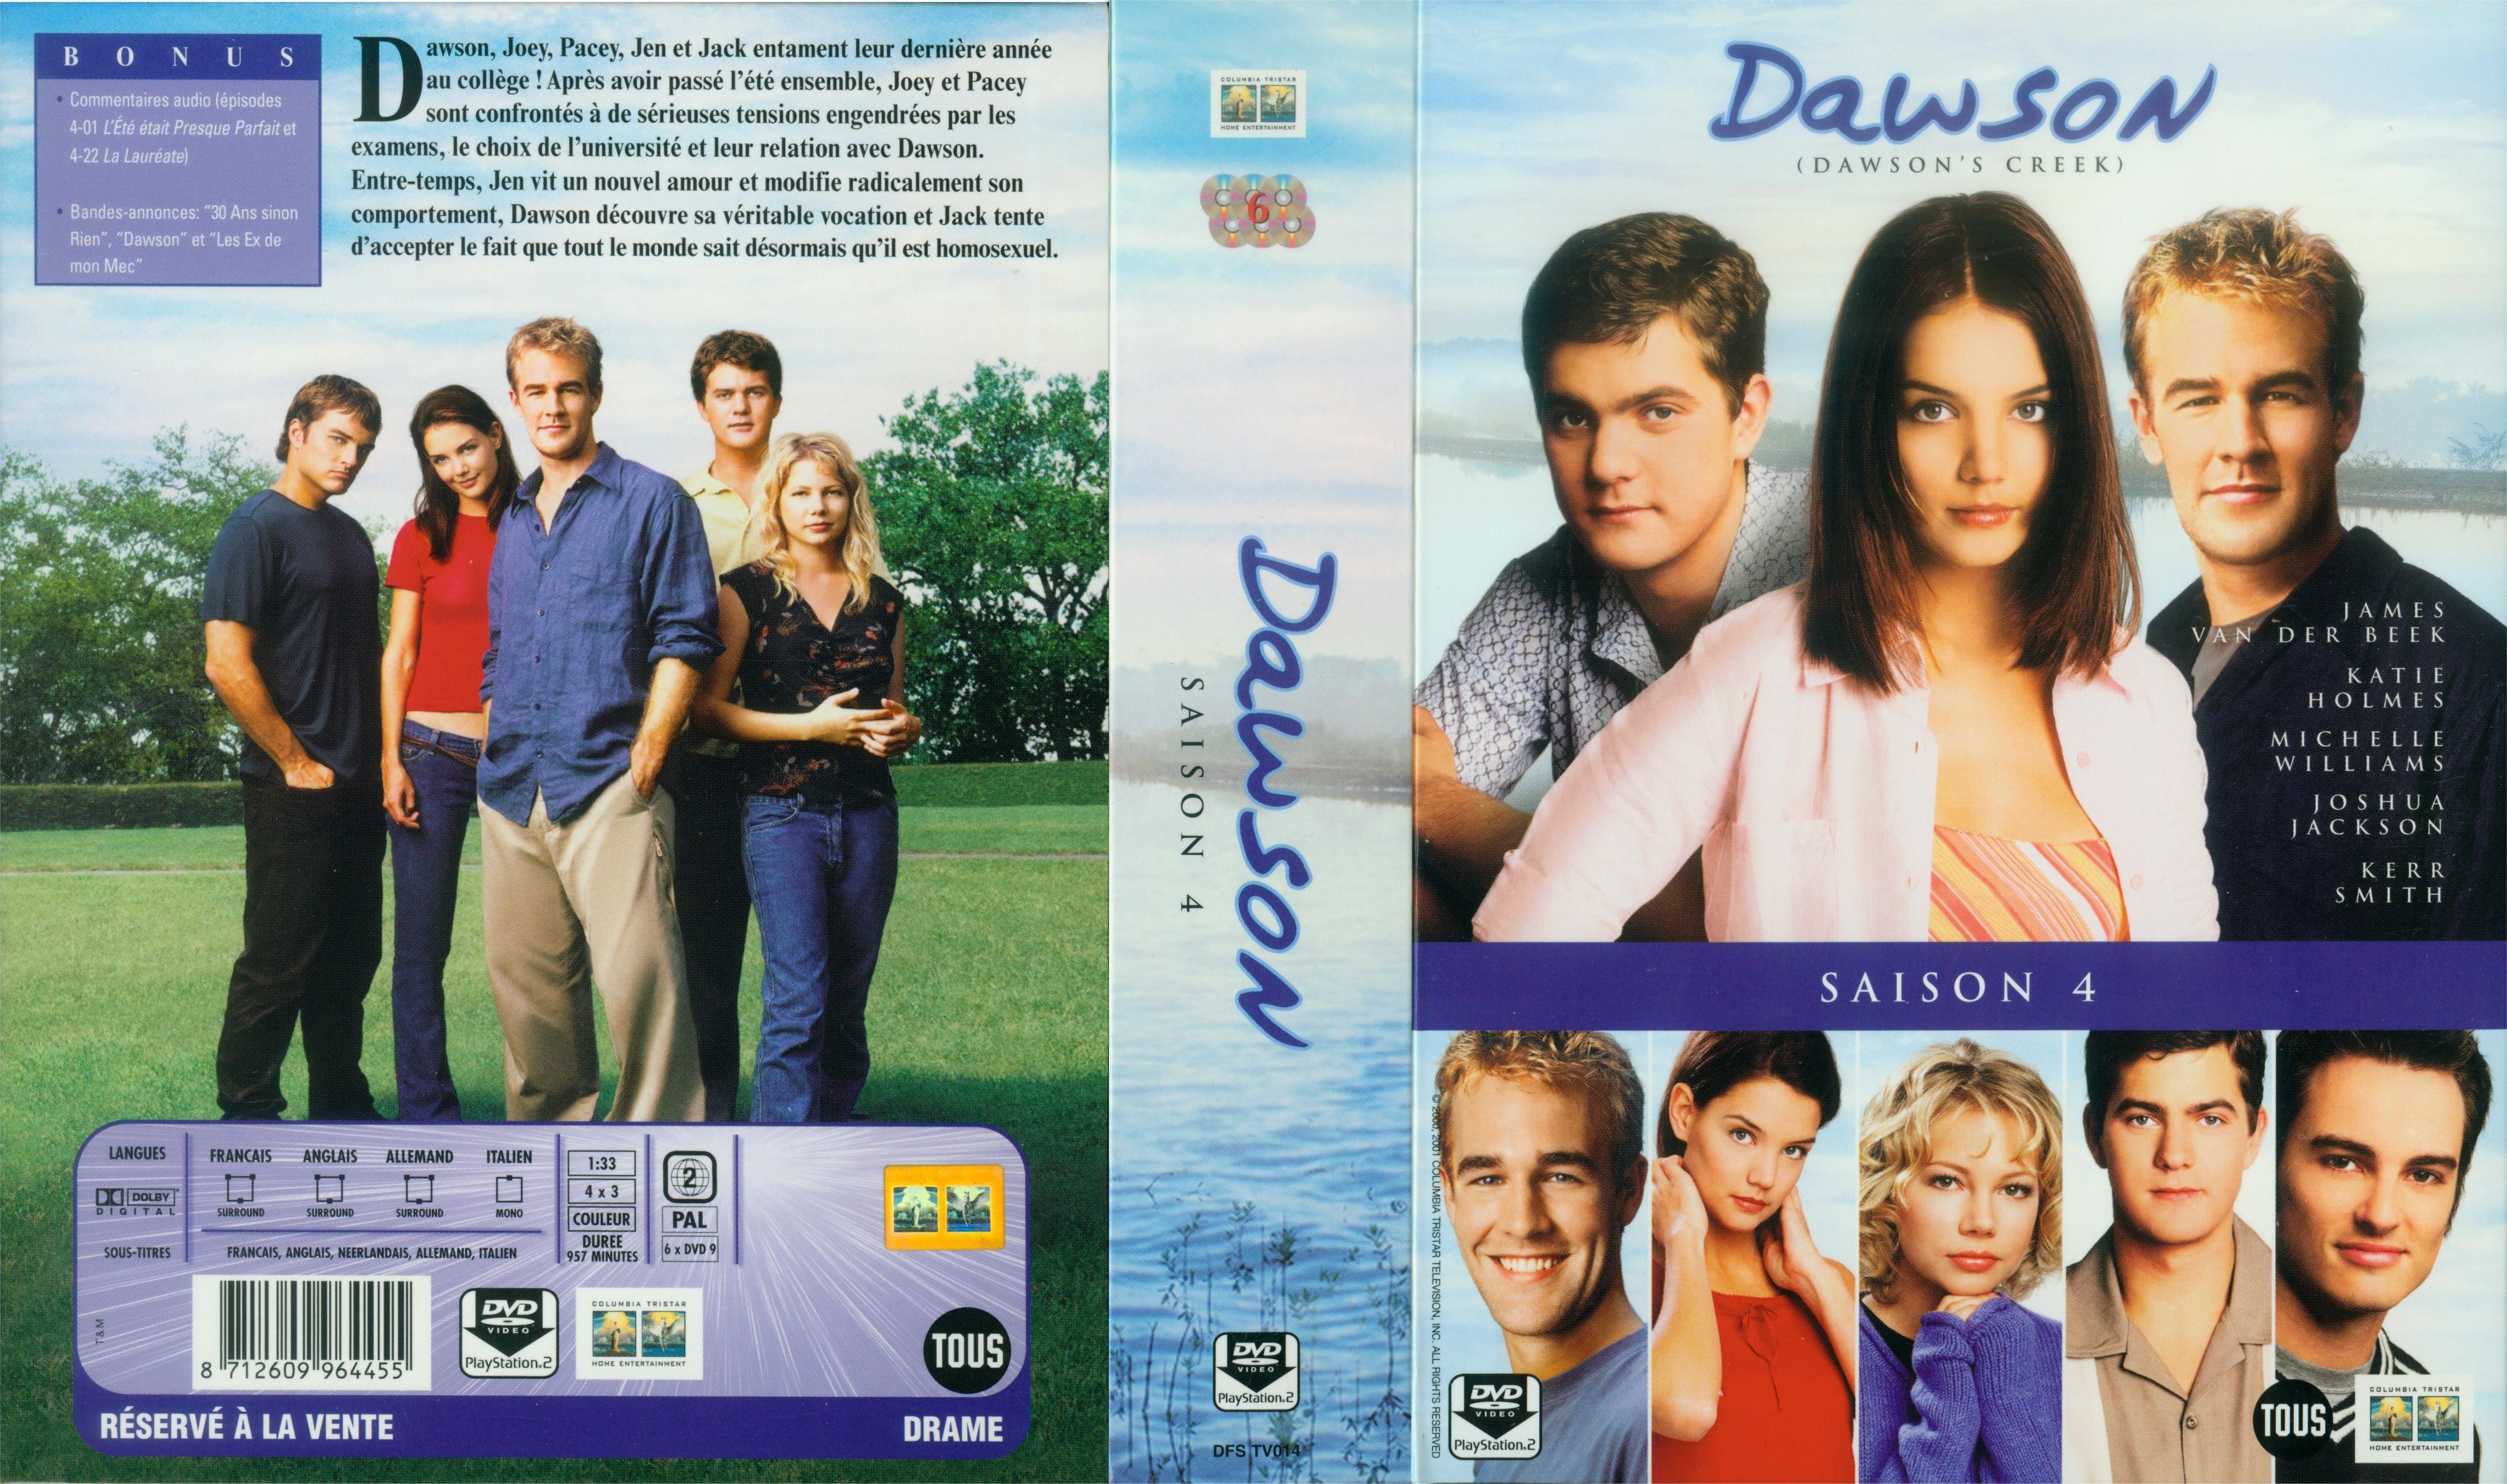 Jaquette DVD Dawson saison 4 COFFRET